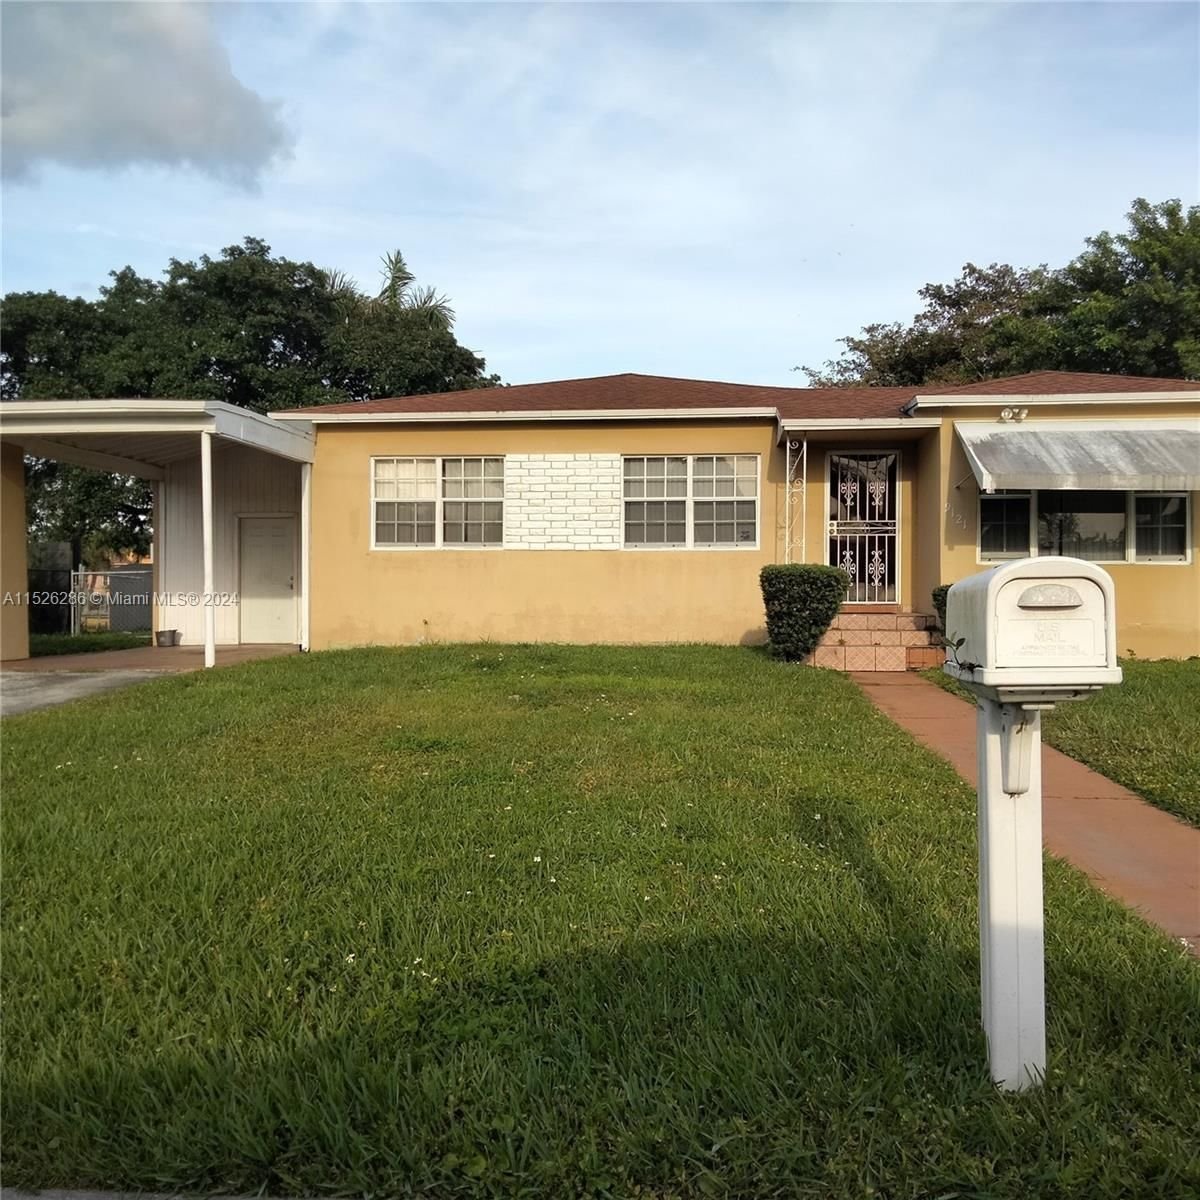 Real estate property located at 9121 Little River Blvd, Miami-Dade County, FLAMINGO VILLAGE, Miami, FL